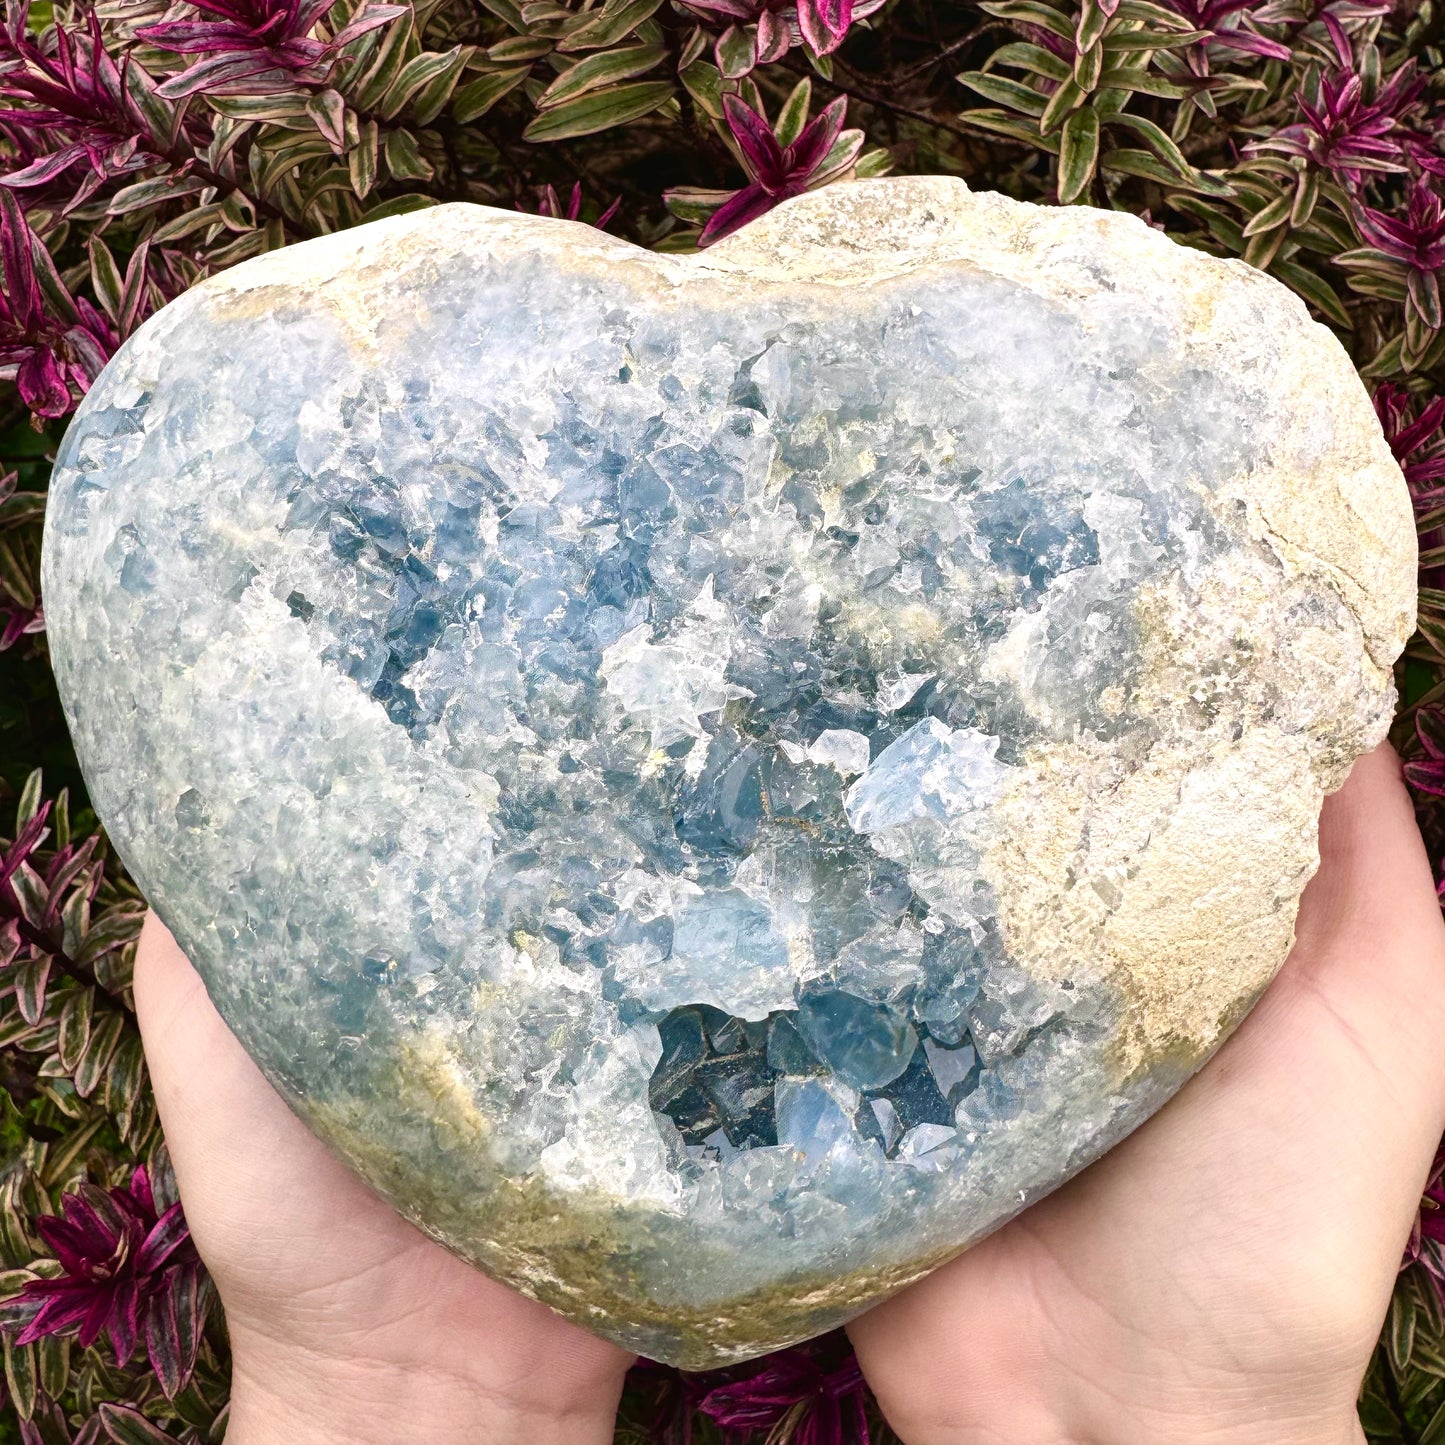 Blue Celestite Crystal Love Heart - 3KG